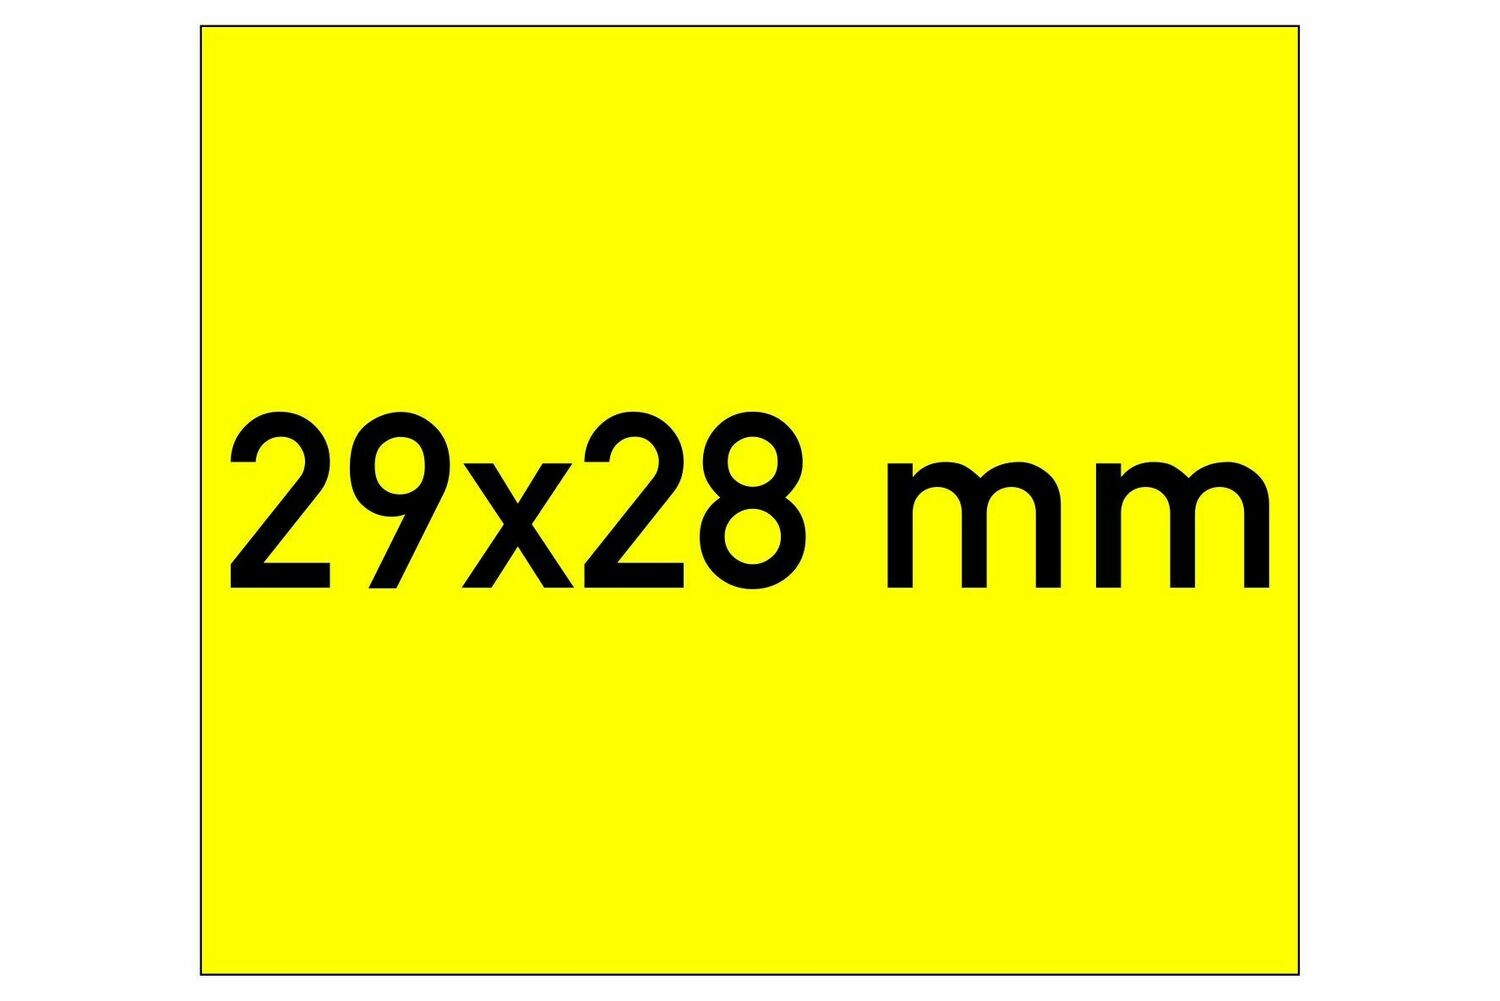 Etiketten 29x28 mm gelb